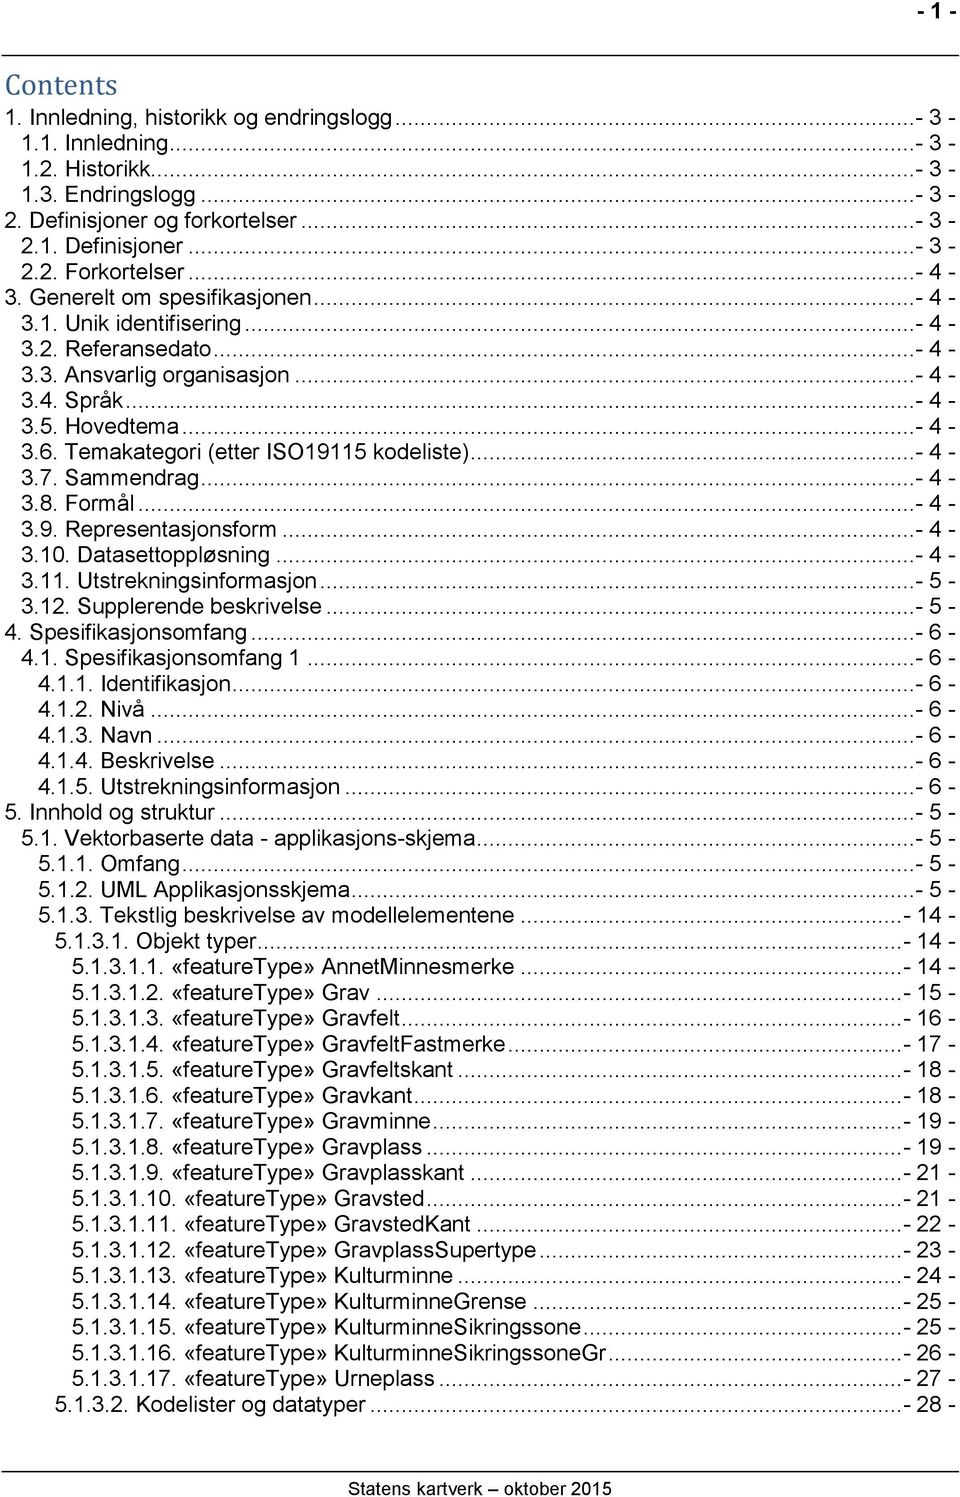 Temakategori (etter ISO19115 kodeliste)...- 4-3.7. Sammendrag...- 4-3.8. Formål...- 4-3.9. Representasjonsform...- 4-3.10. Datasettoppløsning...- 4-3.11. Utstrekningsinformasjon...- 5-3.12.